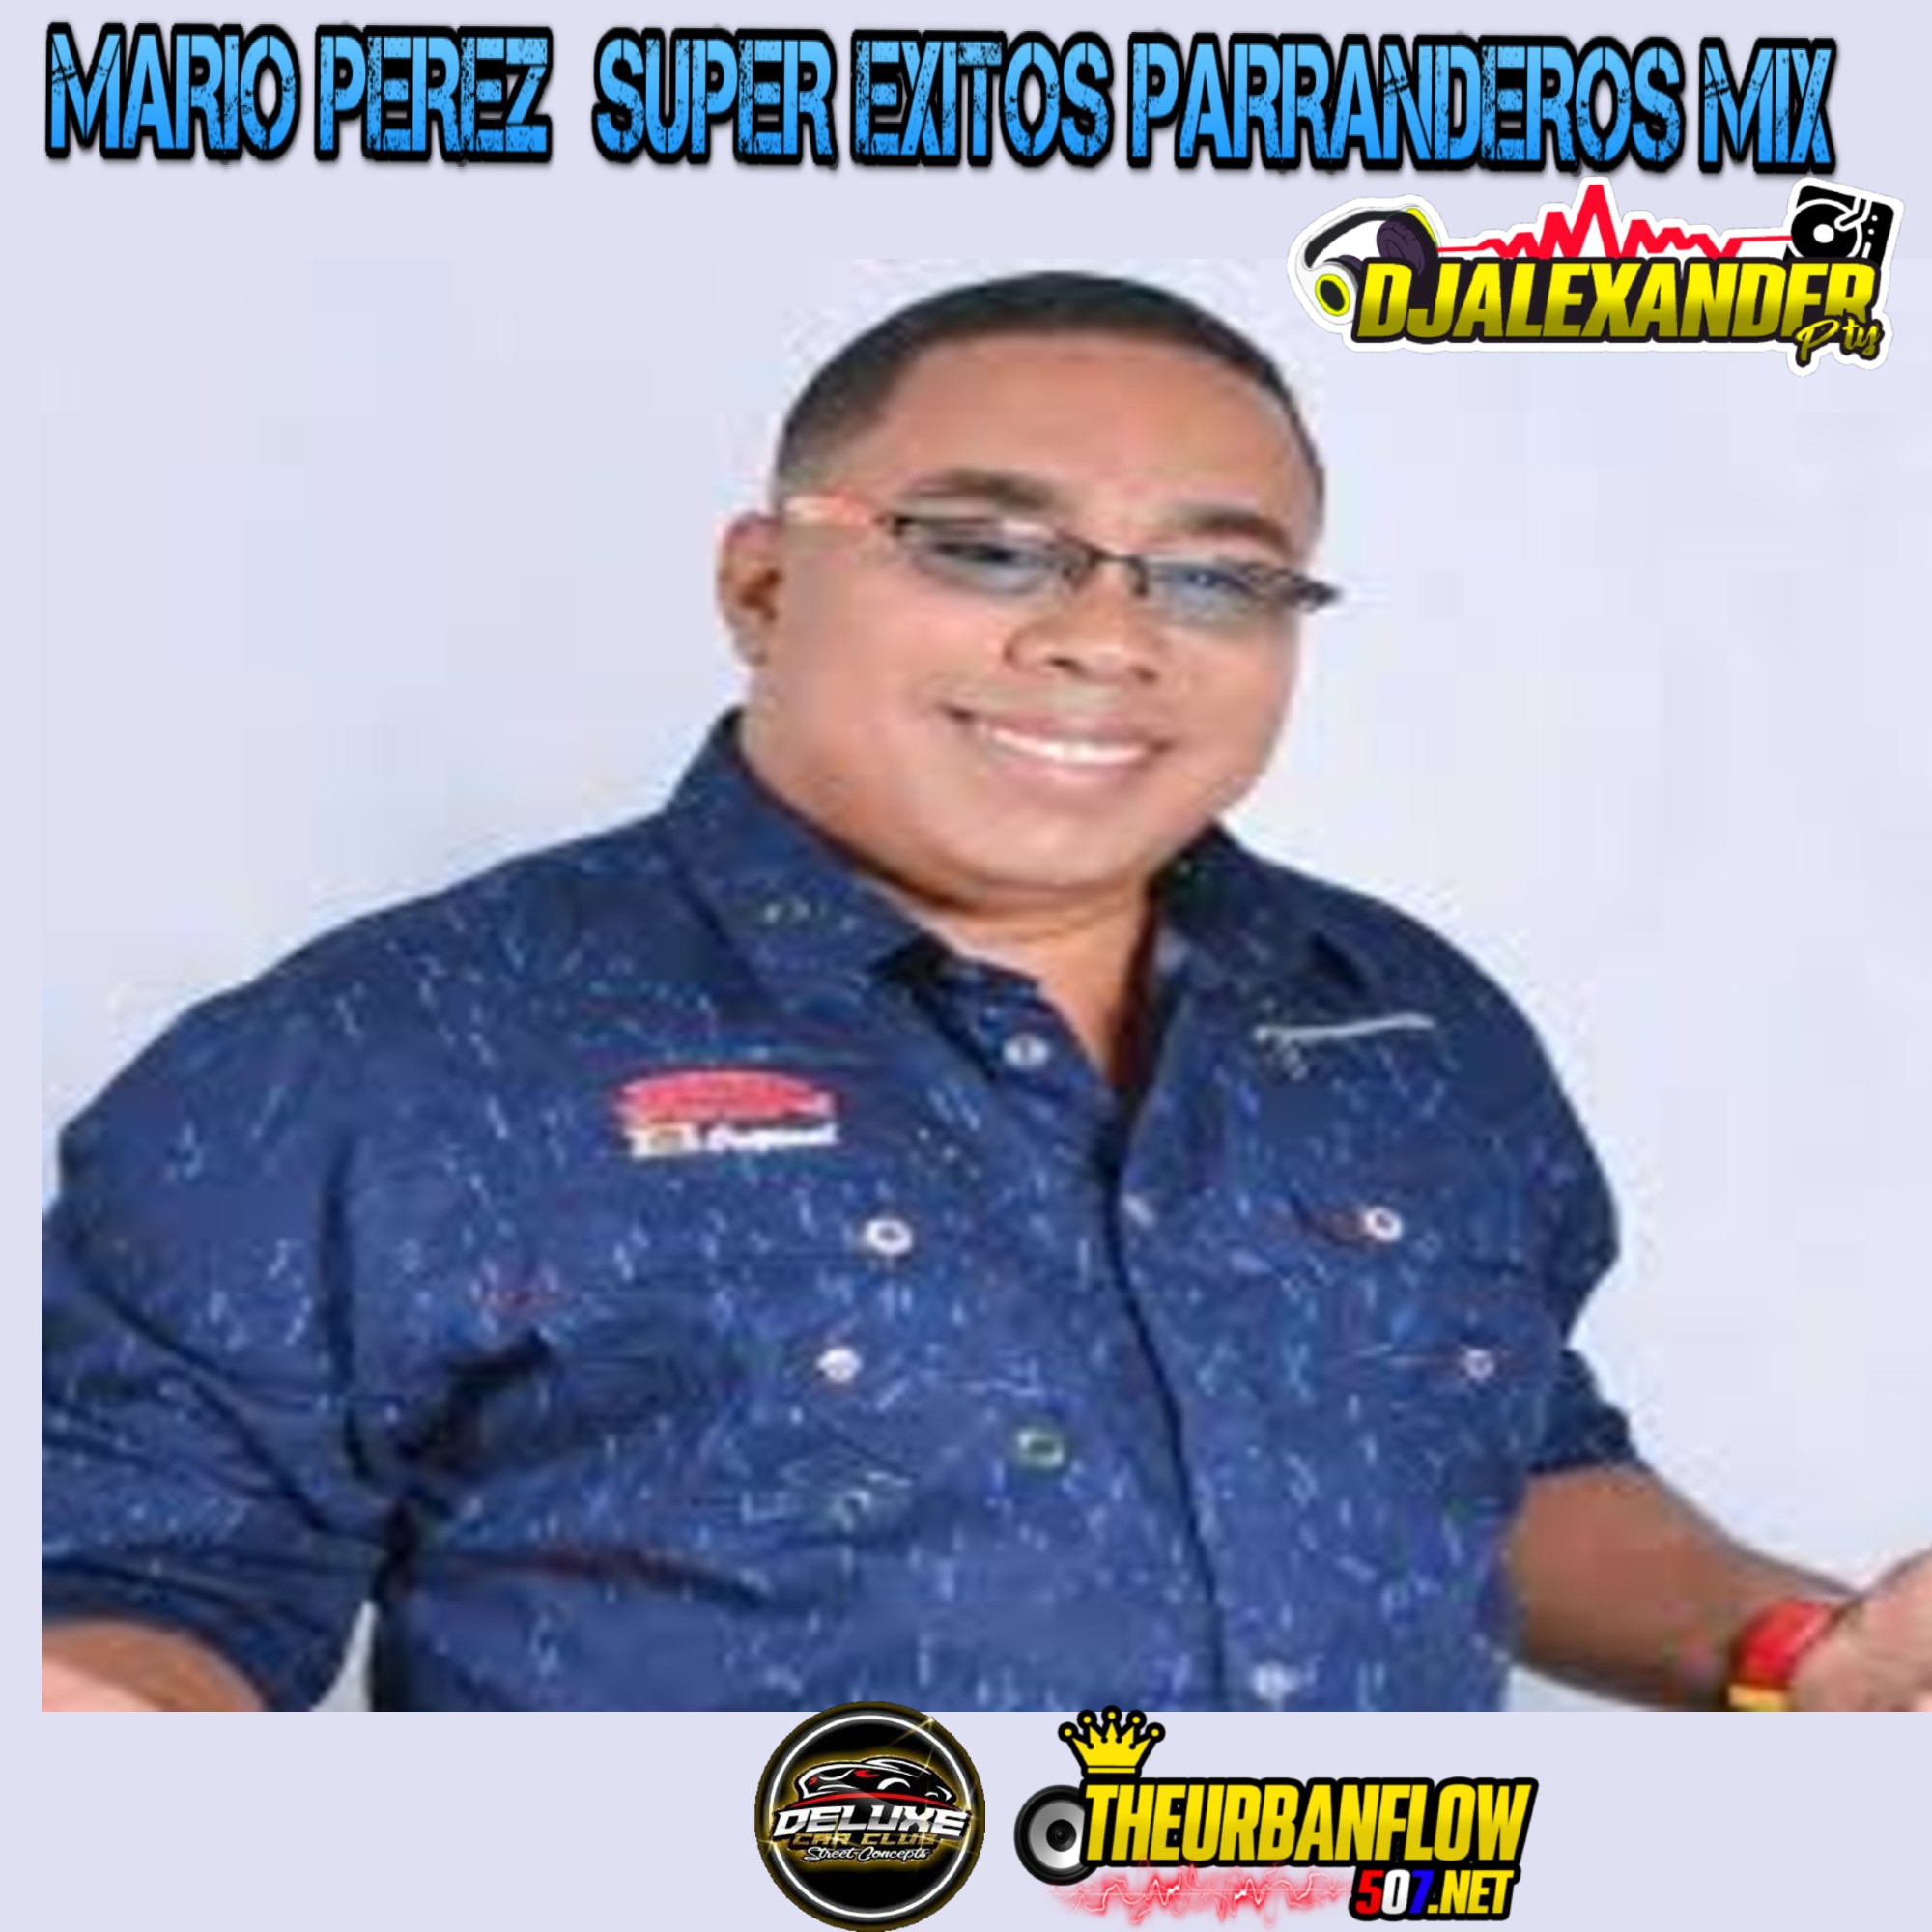 MARIO PEREZ  SUPER EXITOS PARRANDEROS MIX - @DJALEXANDERPTY